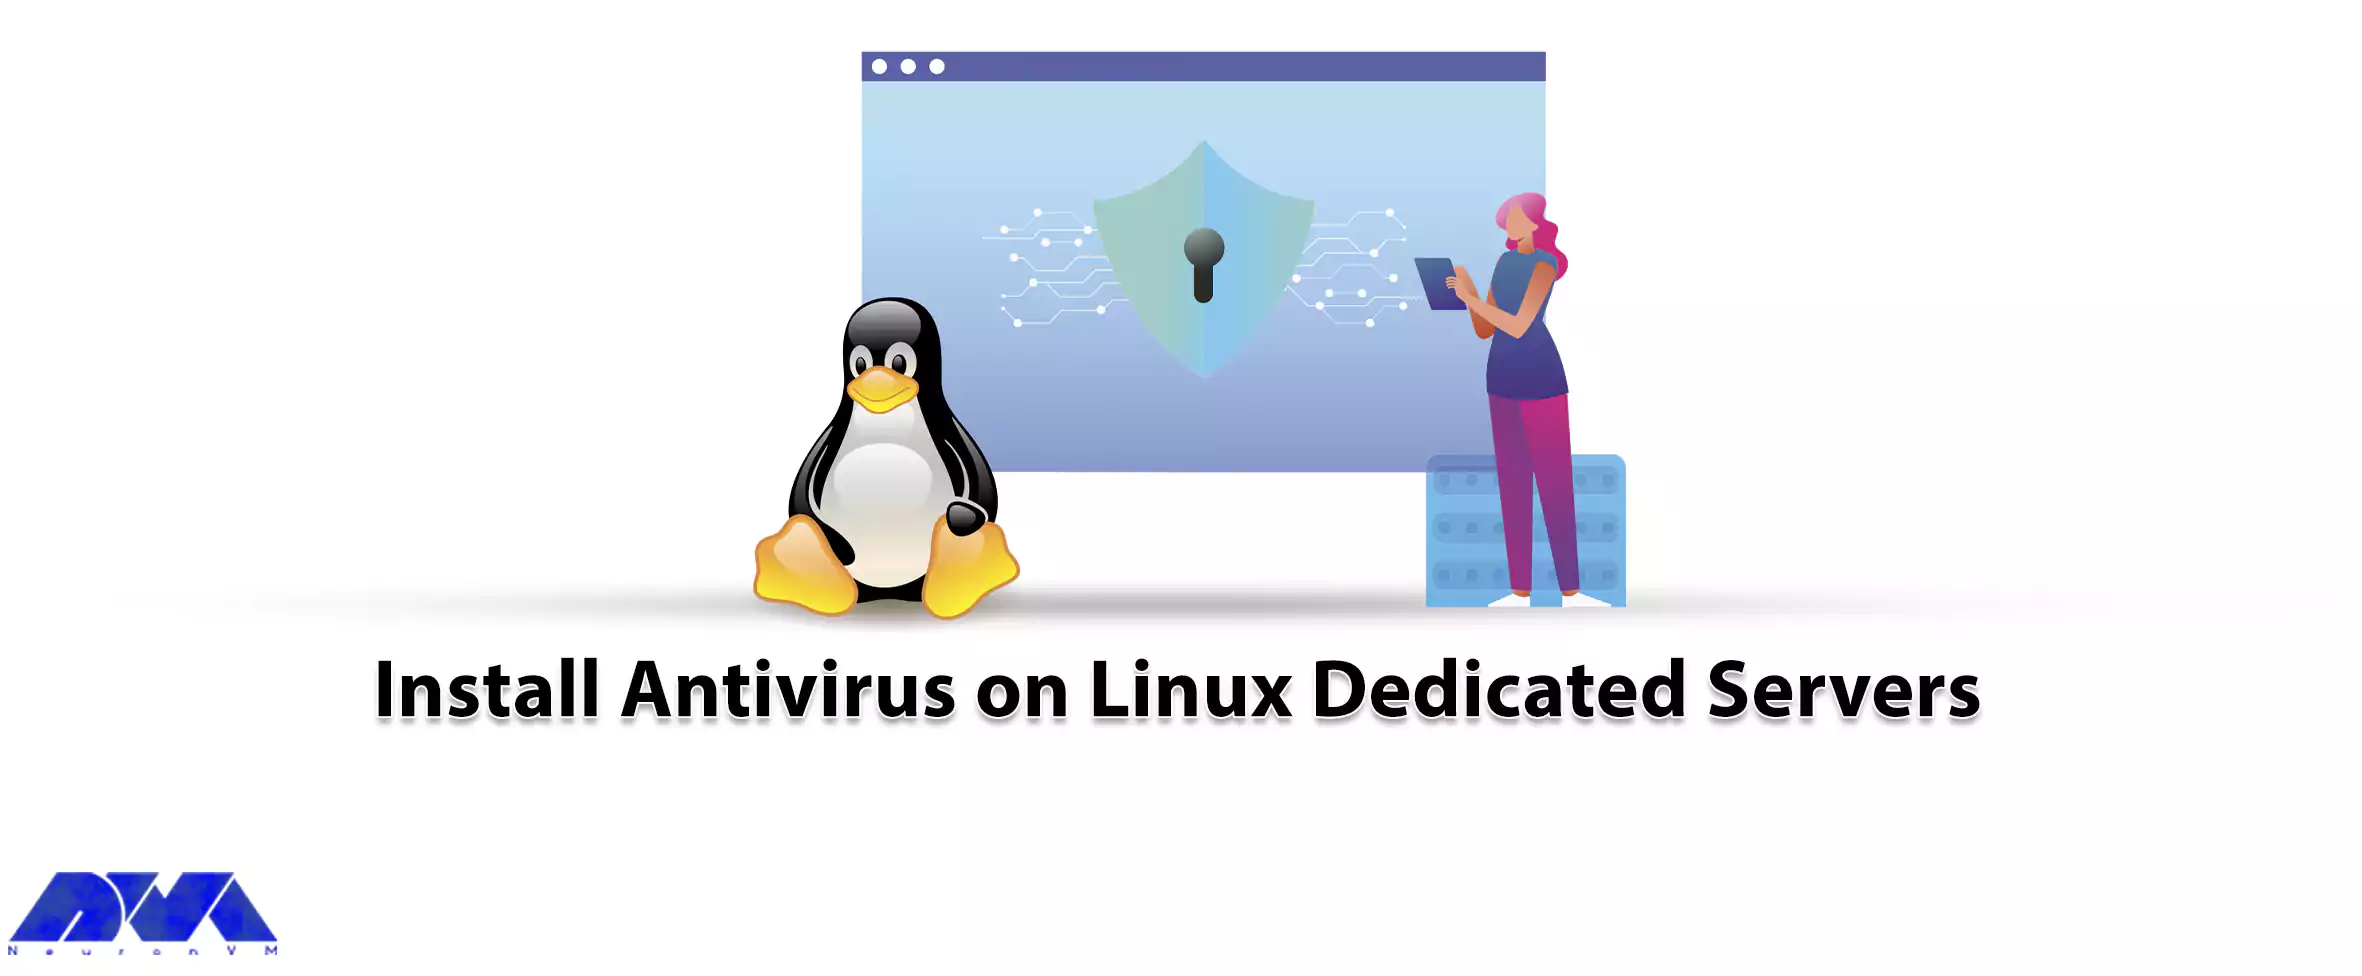 Install Antivirus on Linux Dedicated Servers